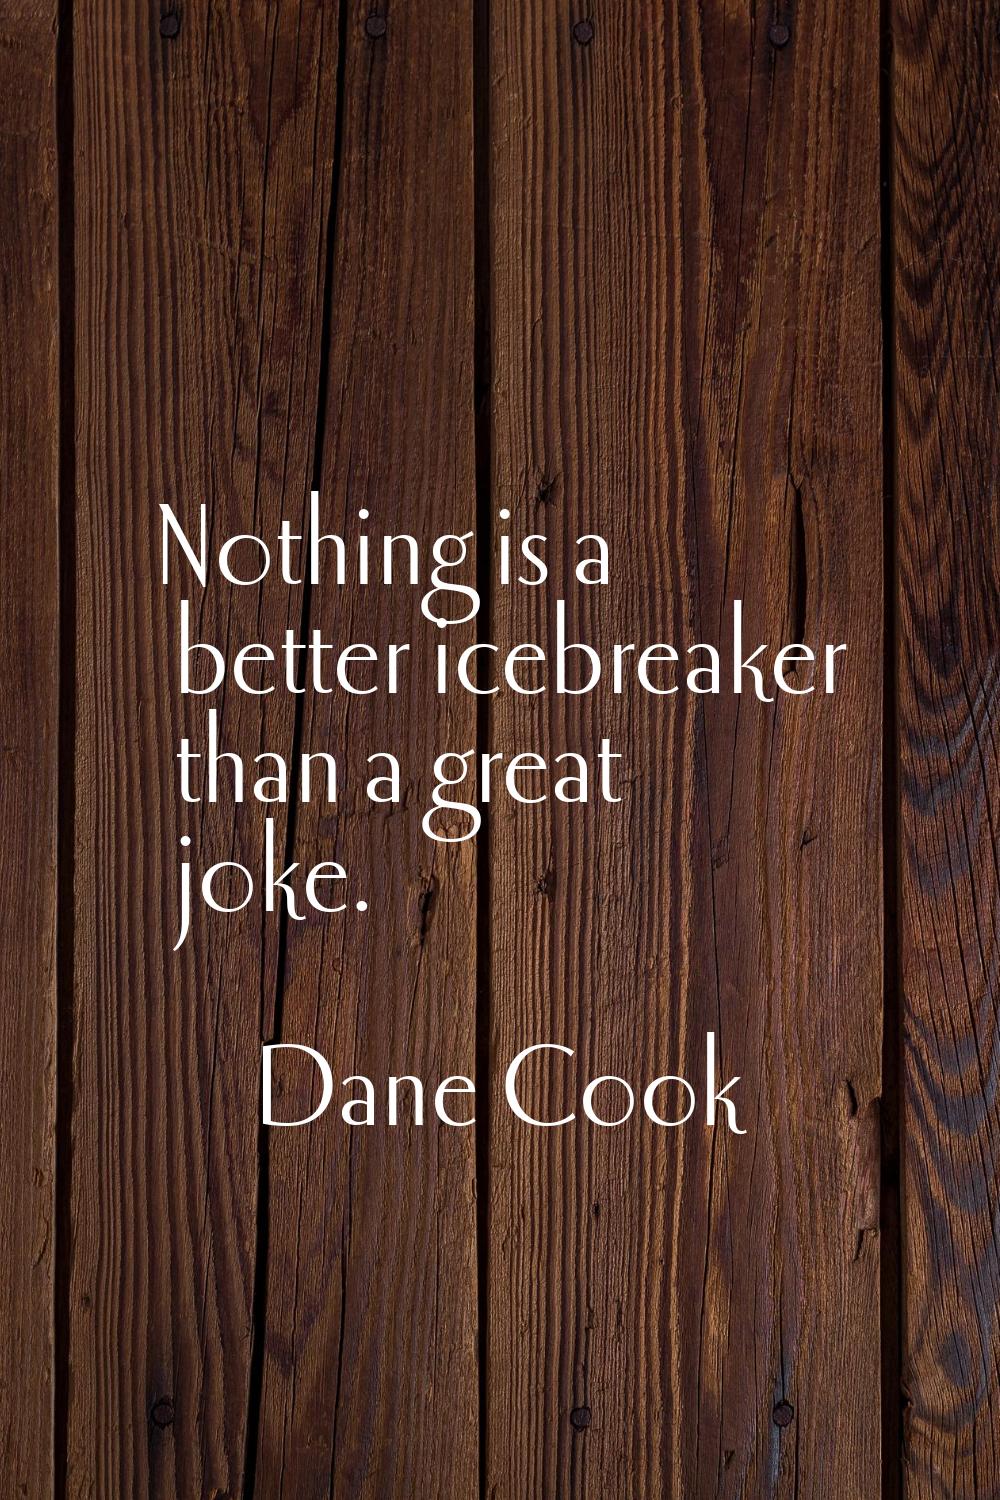 Nothing is a better icebreaker than a great joke.